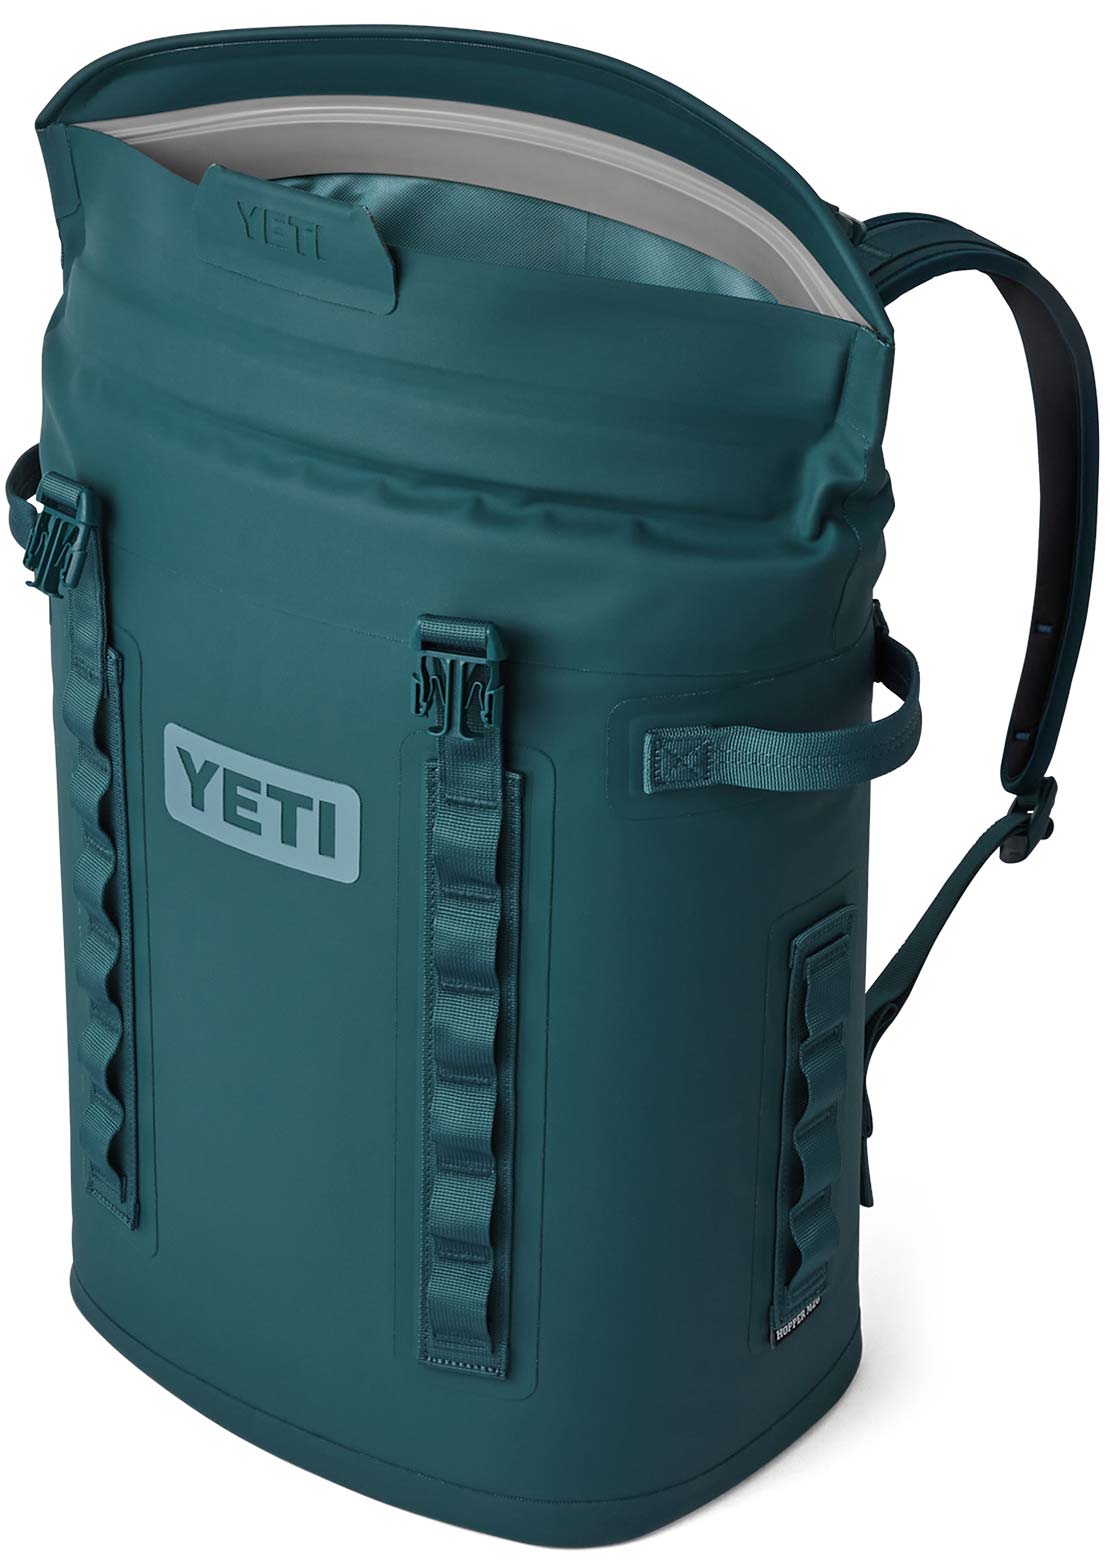 YETI Hopper Backpack M20 Soft Cooler Agave Teal